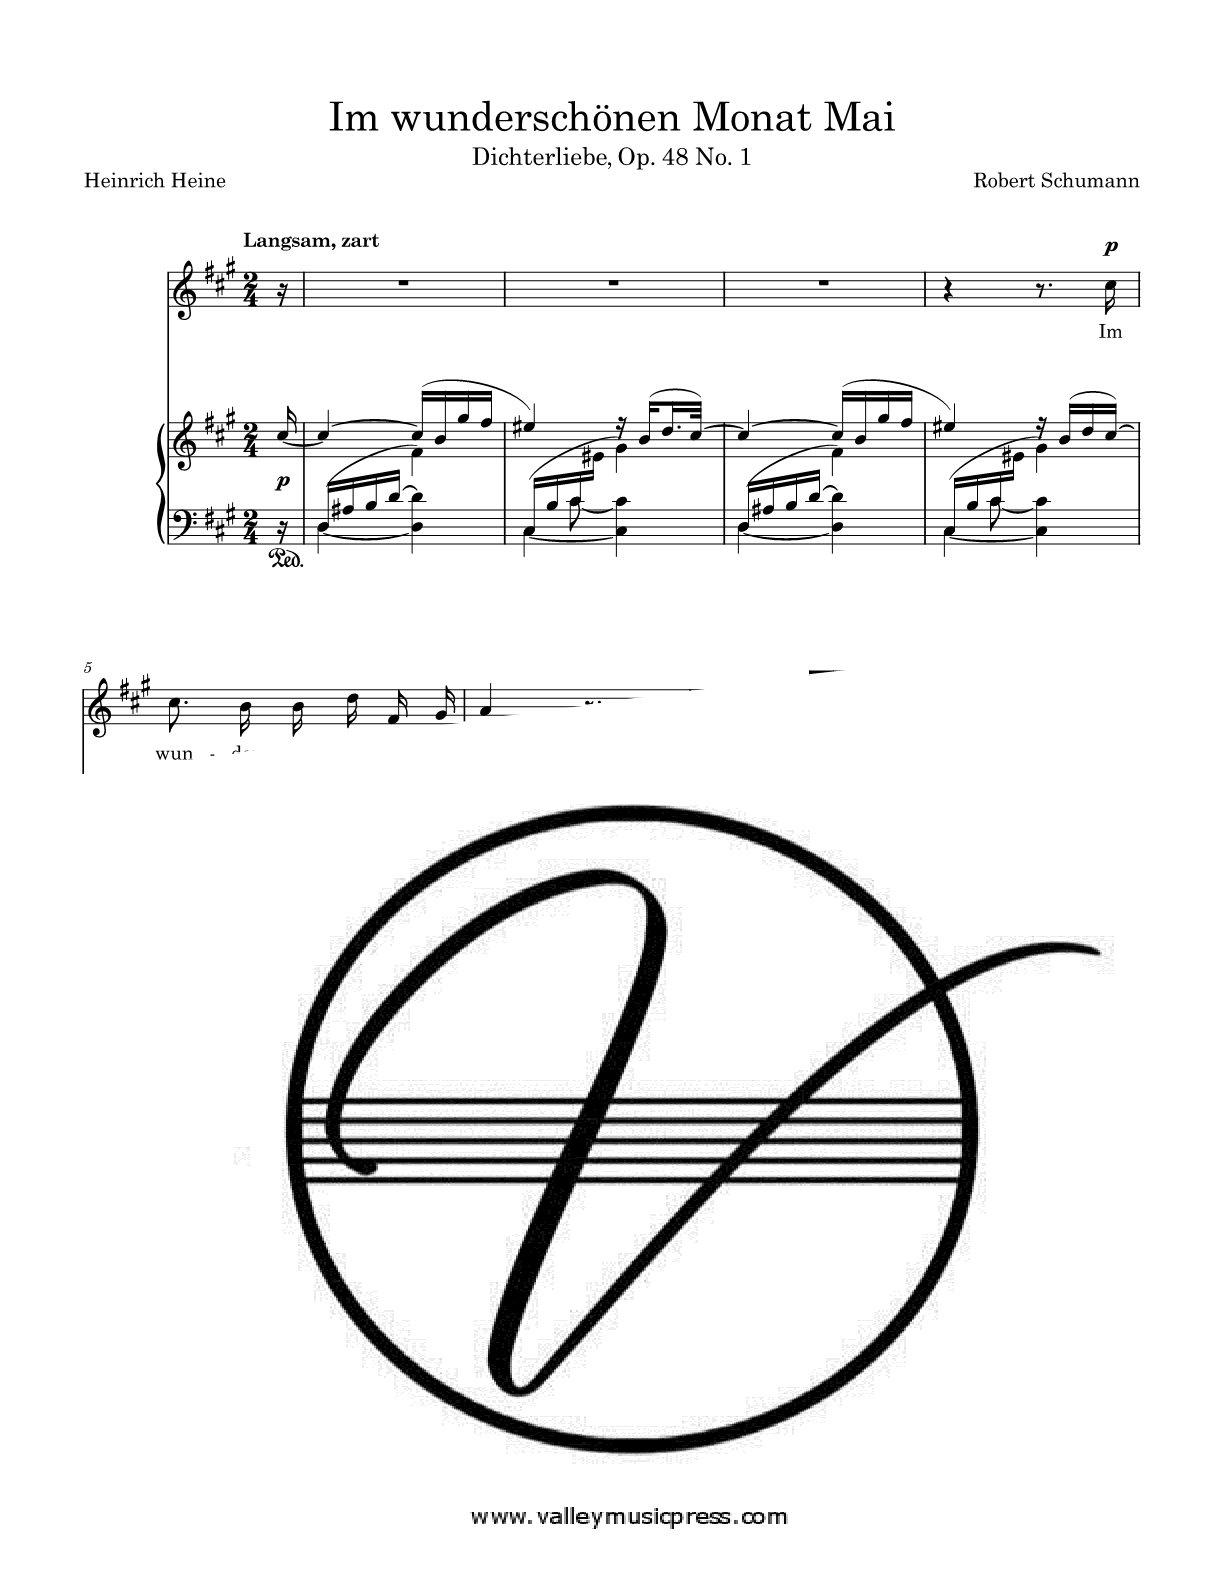 Schumann - Im wunderschonen Monat Mai Op. 48 No. 1 (Voice)